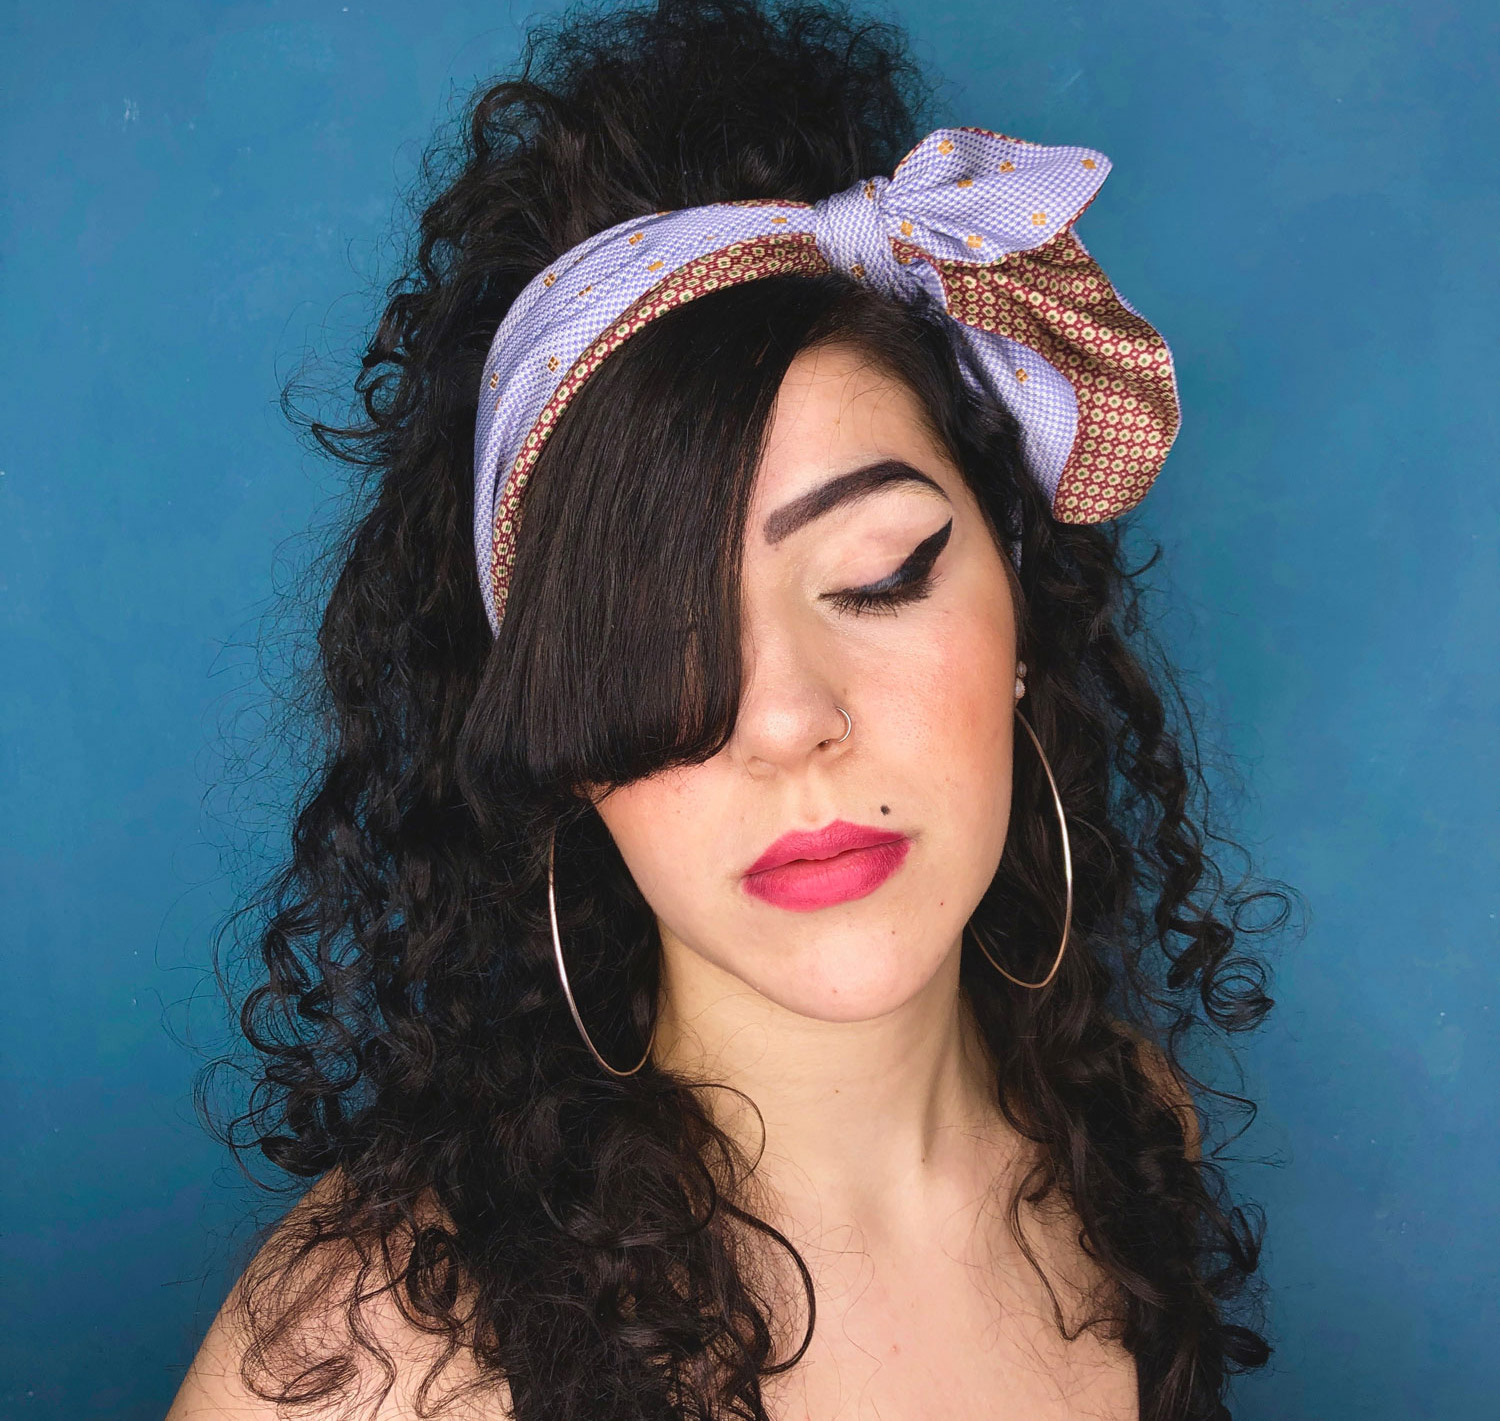 Ritratto fotografico cosplay di Amy Winehouse, interpretata per le fasce per capelli Vipuntozero